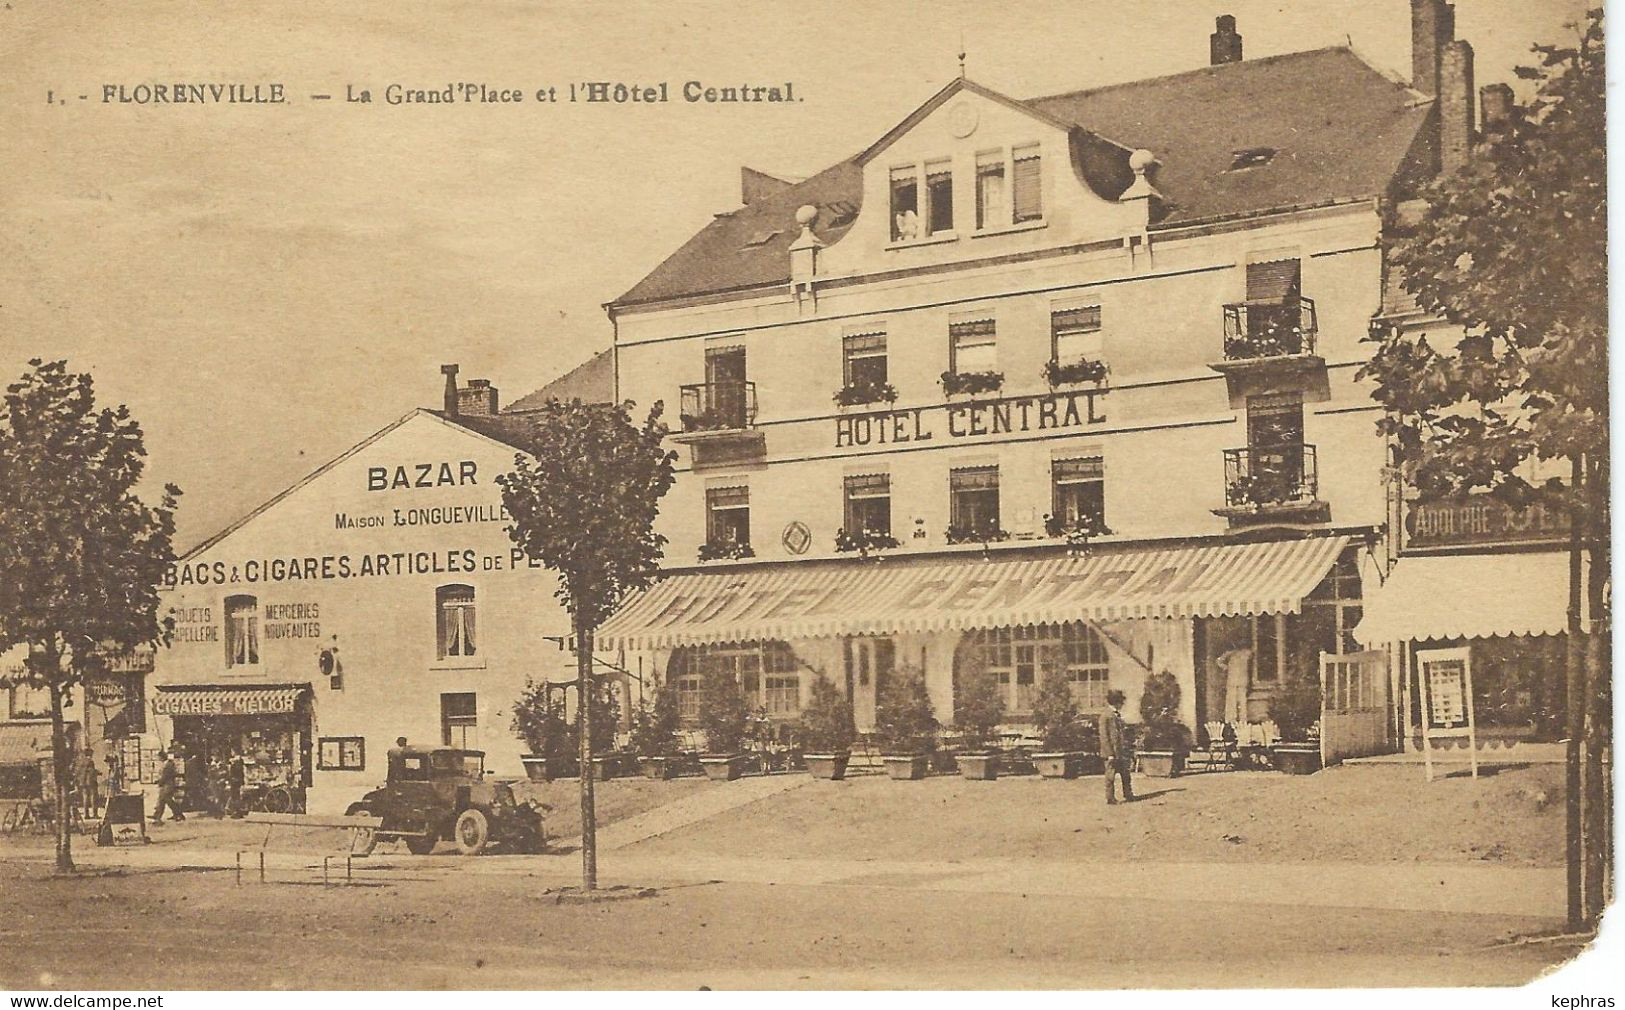 1. - FLORENVILLE ; La Grand'Place Et L'Hôtel Central - Coin Inférieur Droit Arrondi - Florenville